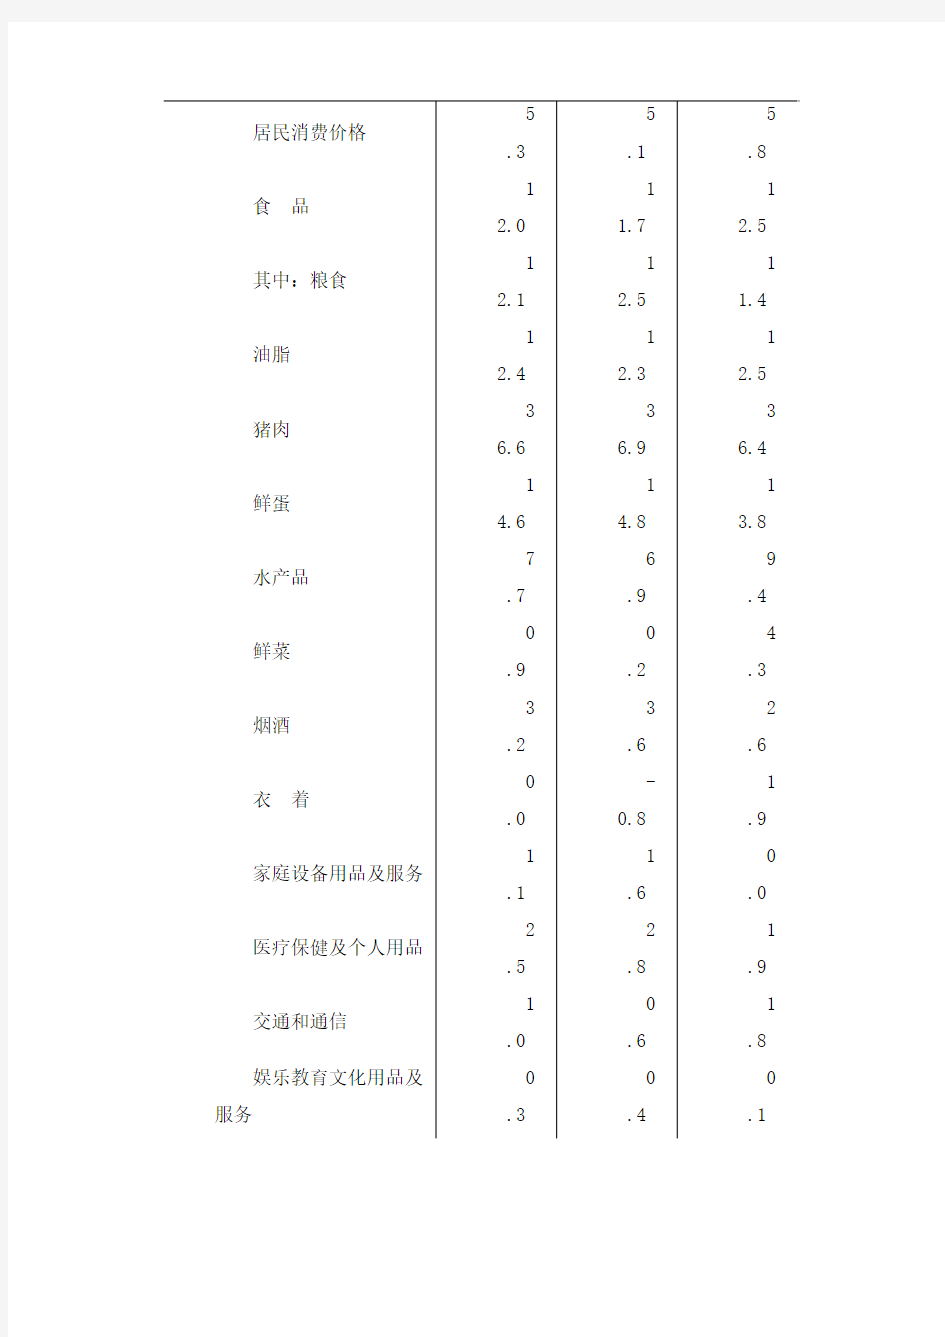 2011年北京市国民经济和社会发展统计公报